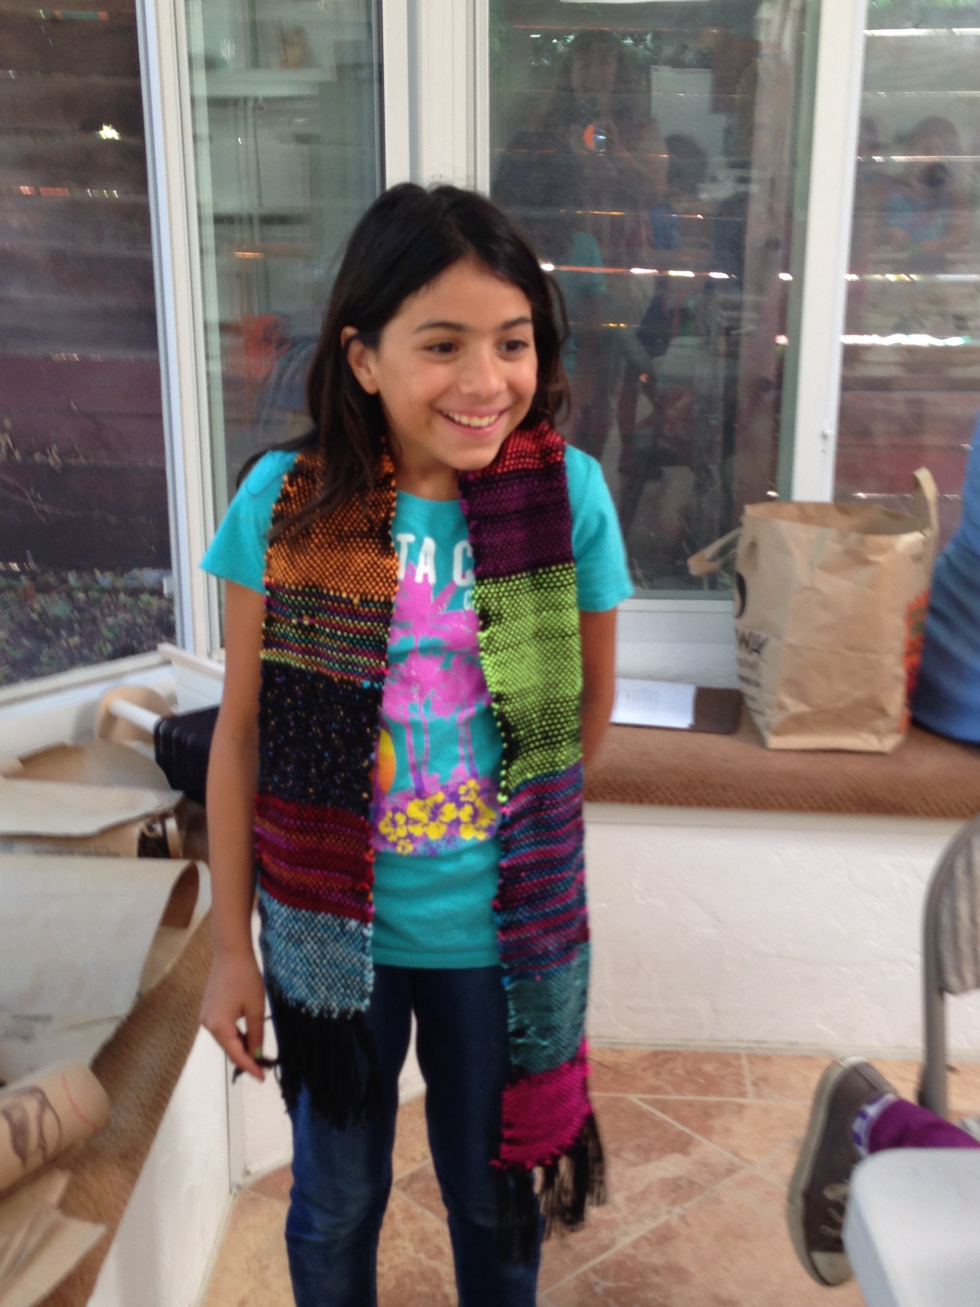  4th grader scarf 